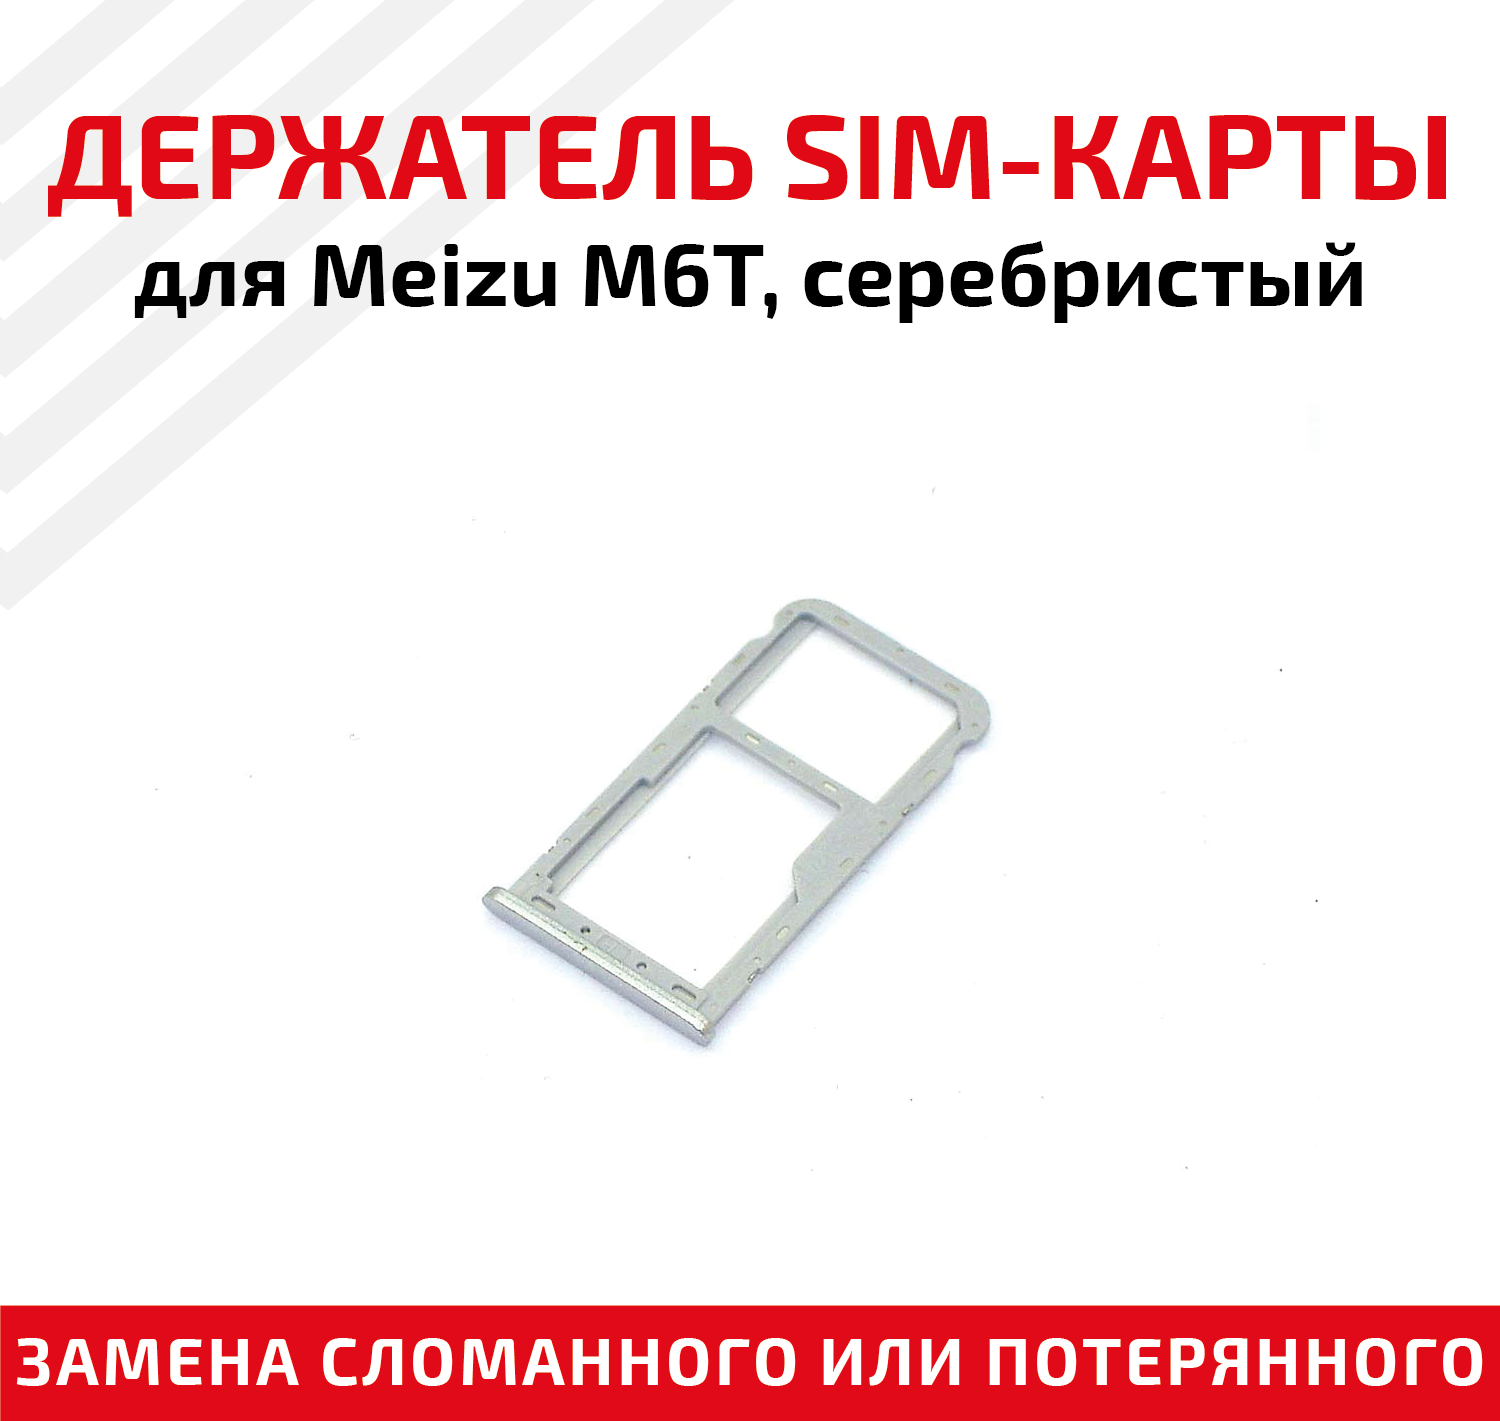 Лоток (держатель, контейнер, слот) SIM-карты для мобильного телефона (смартфона) Meizu M6T, серебристый